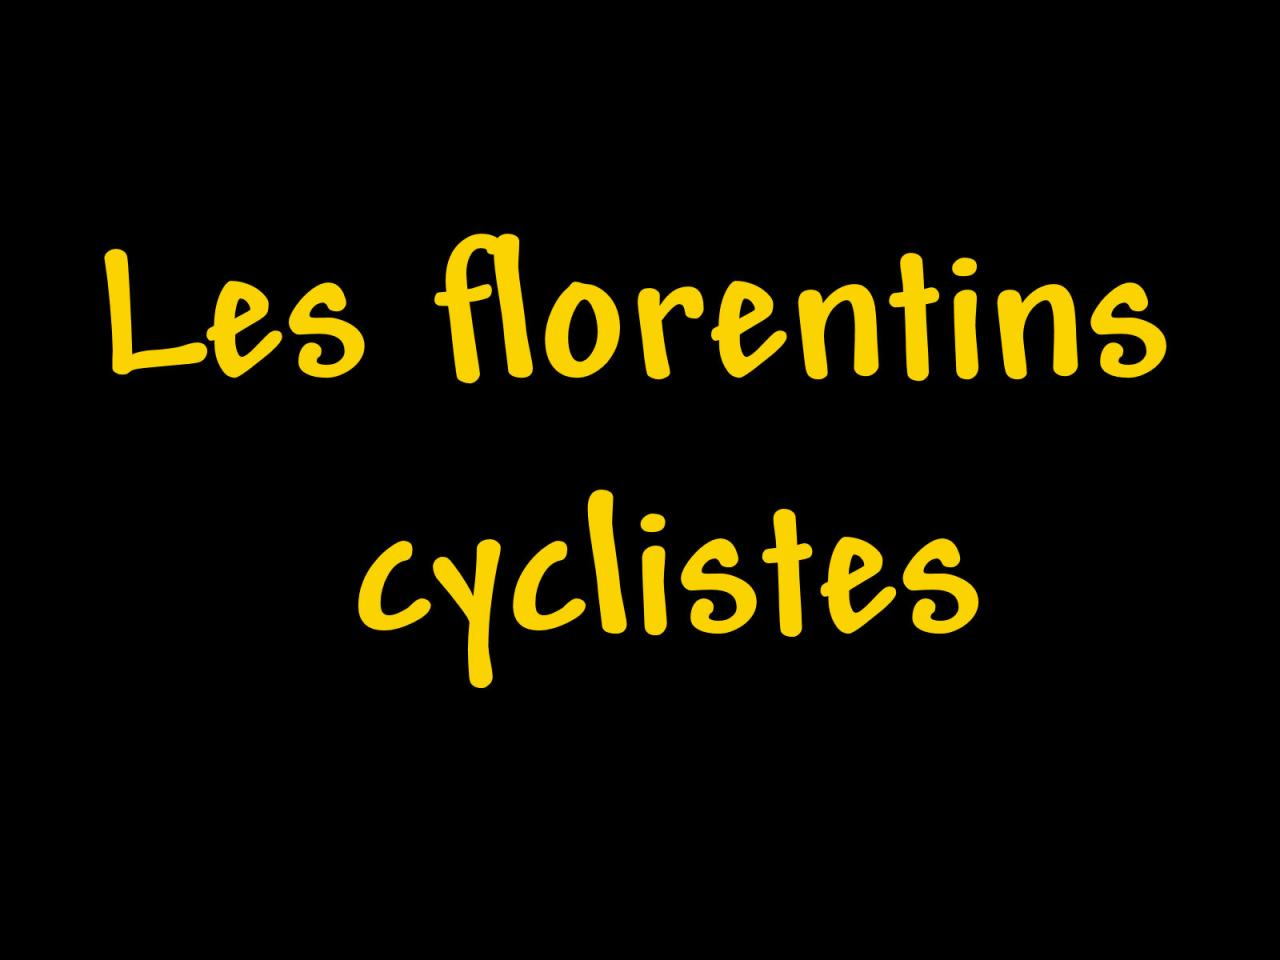 Les florentins cyclistes